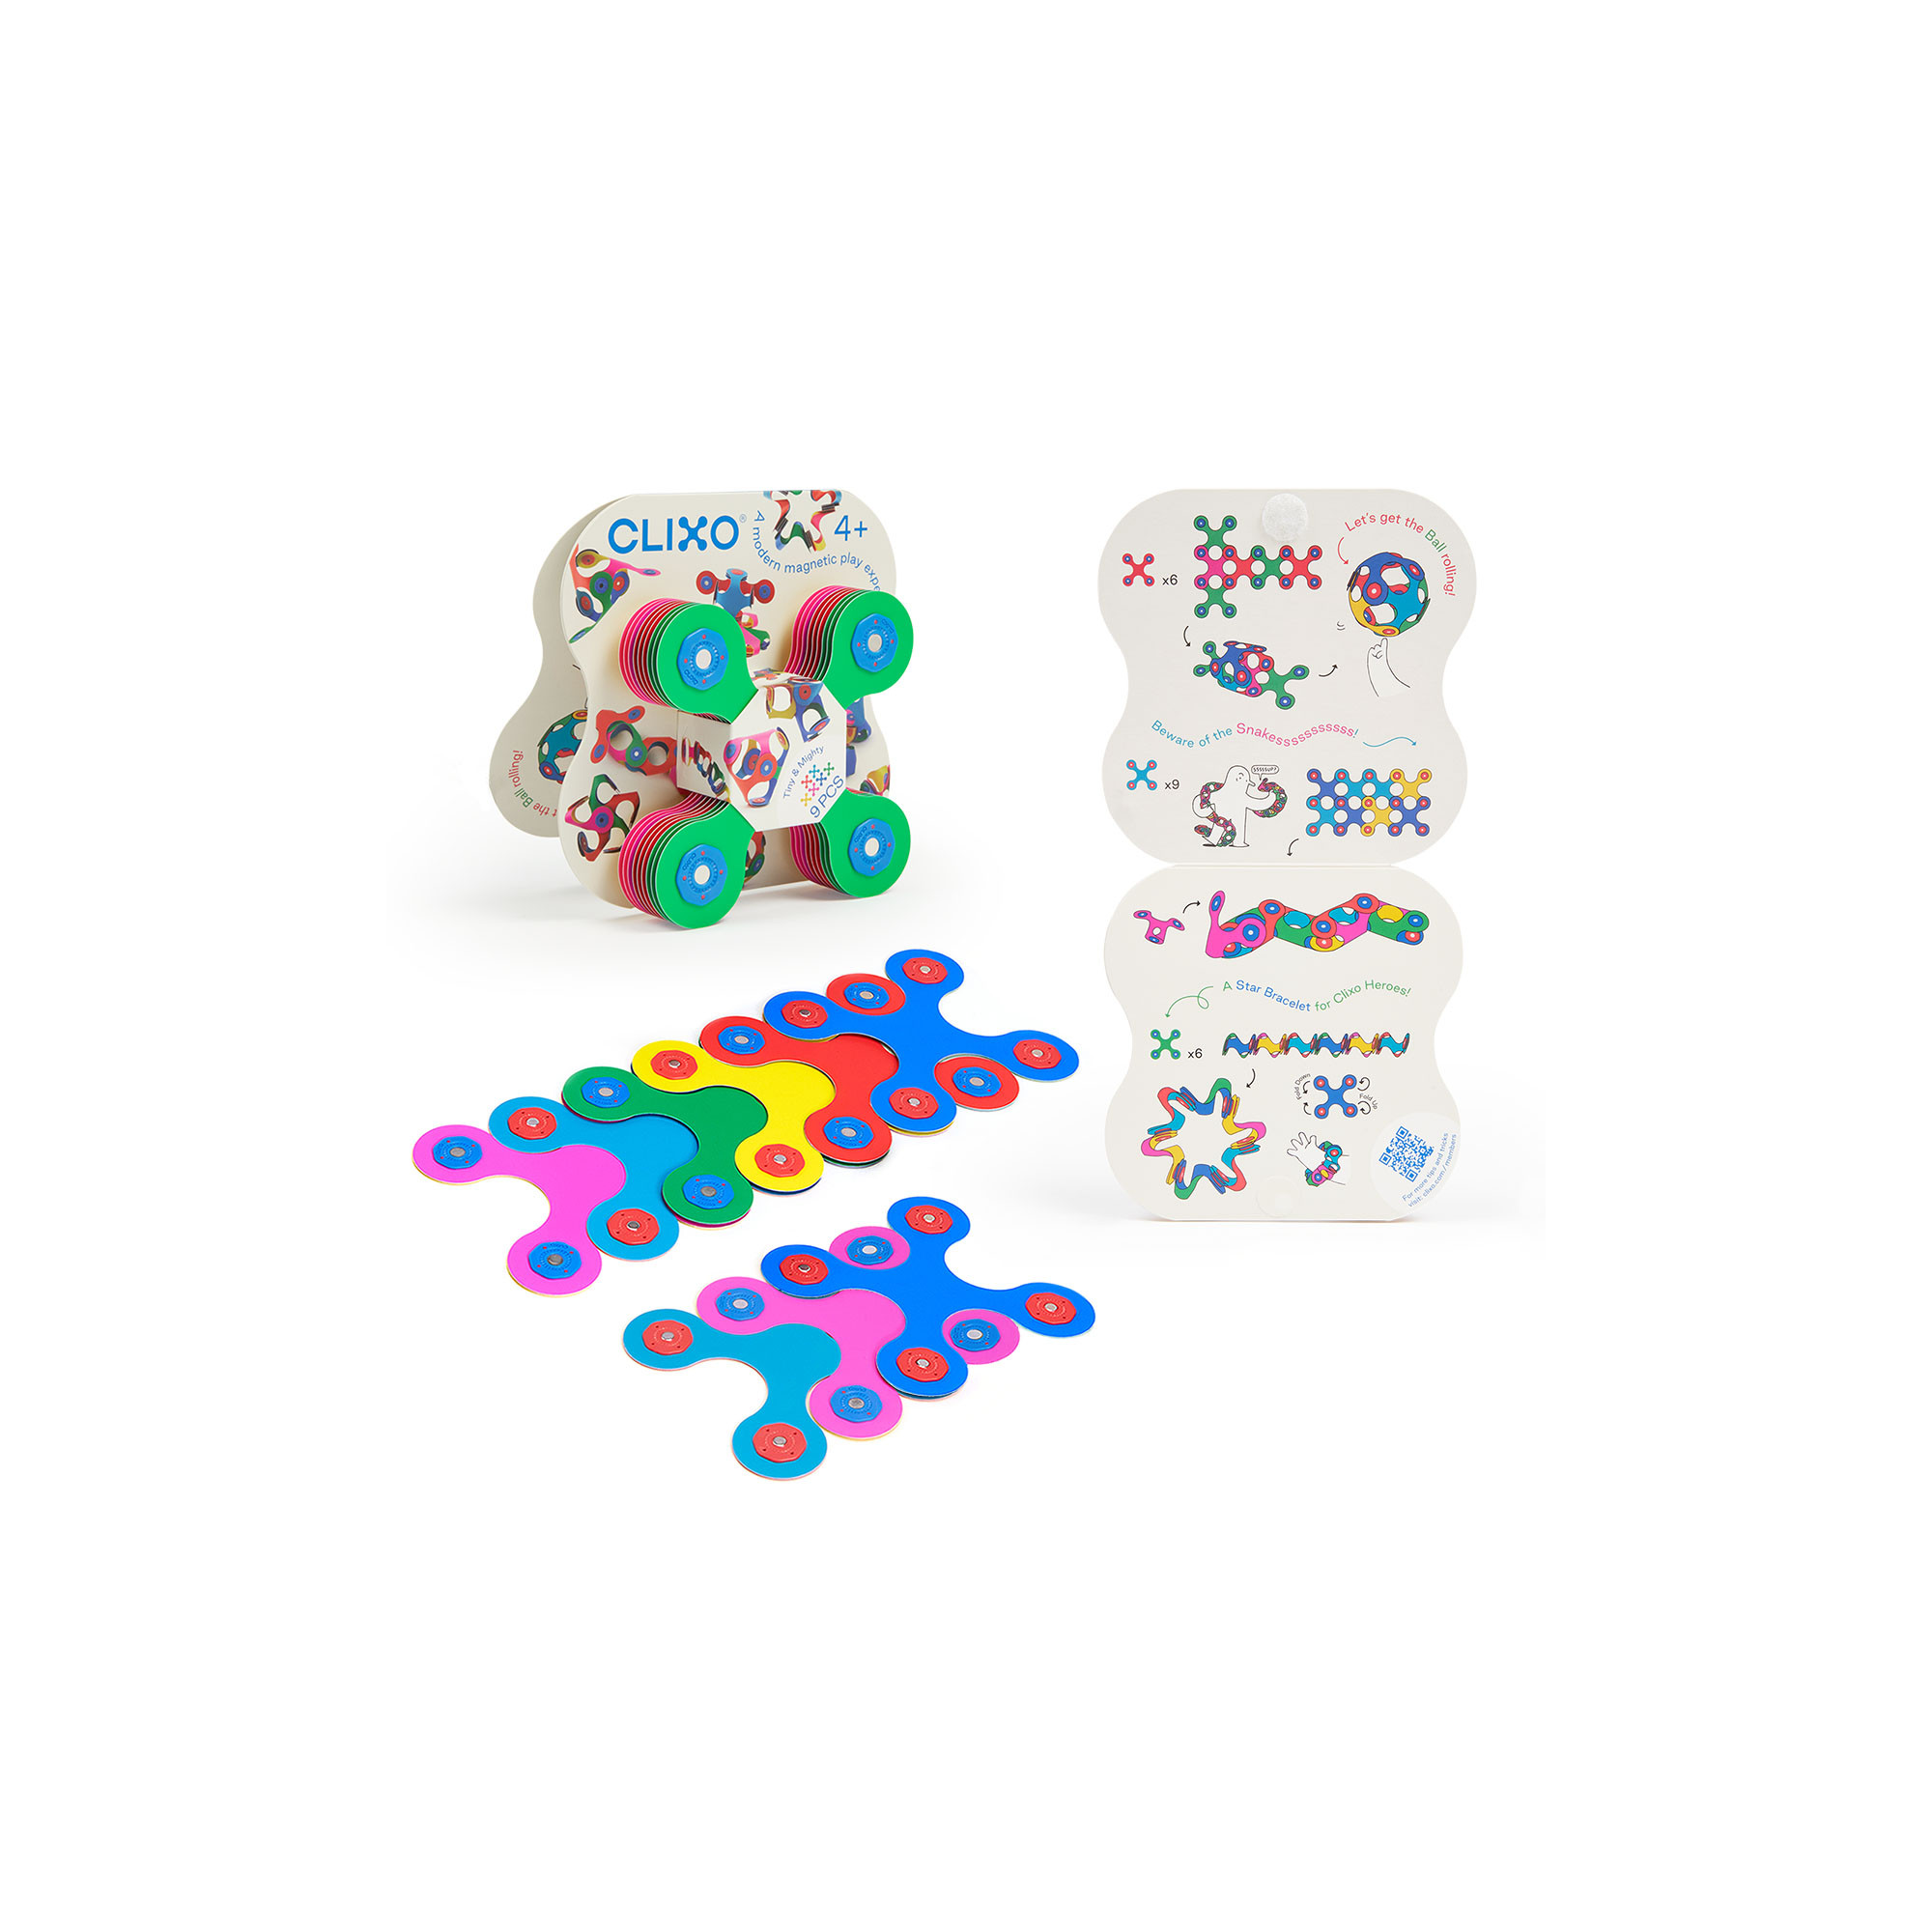 Tiny & Mighty Clixo - Jeu de construction magnétique, flexible, durable & imaginatif - 9 pièces - dès 4 ans